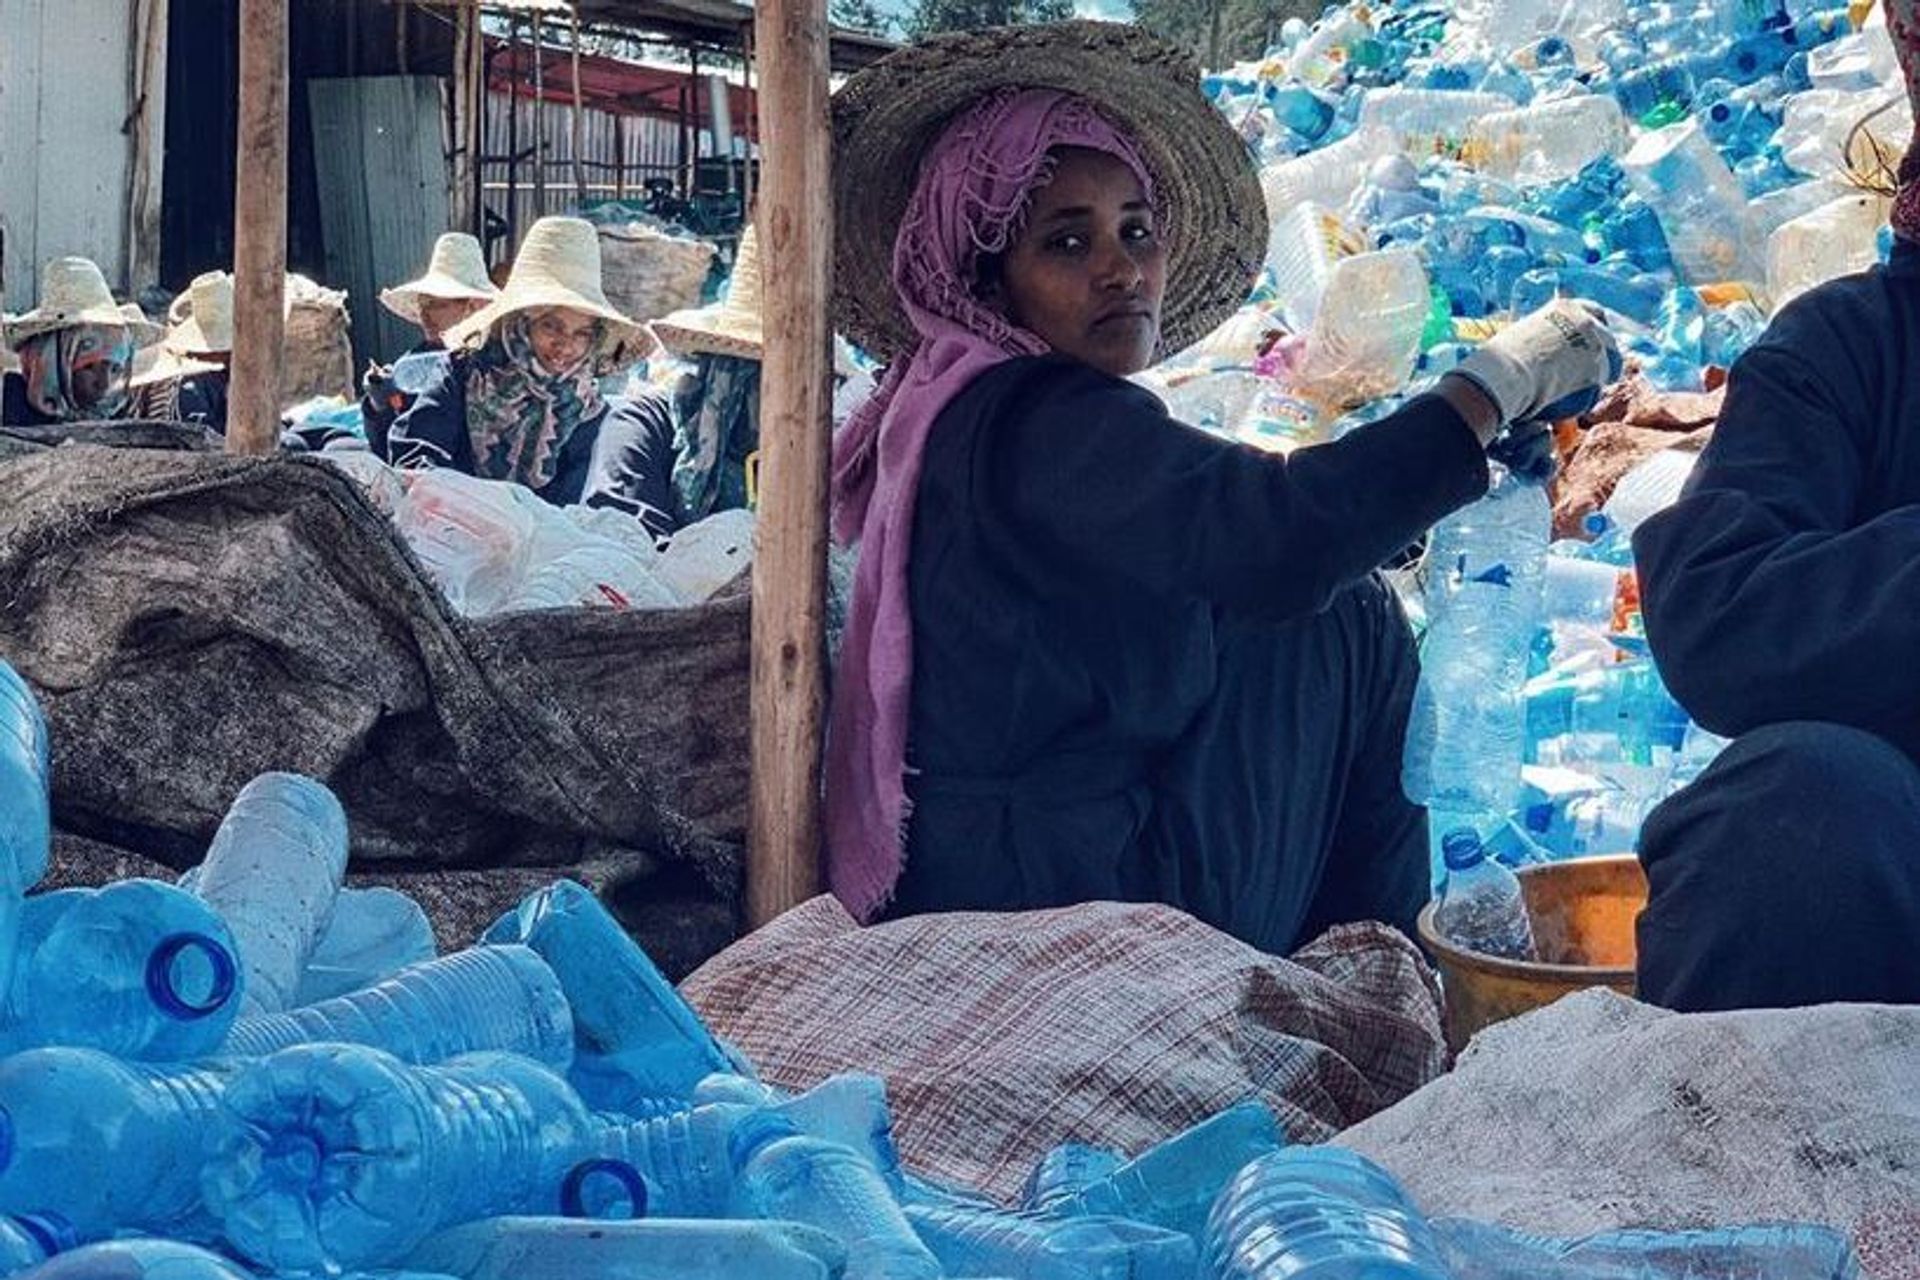 Le attività femminili di raccolta della plastica della "Associazione Zenzero" in Etiopia